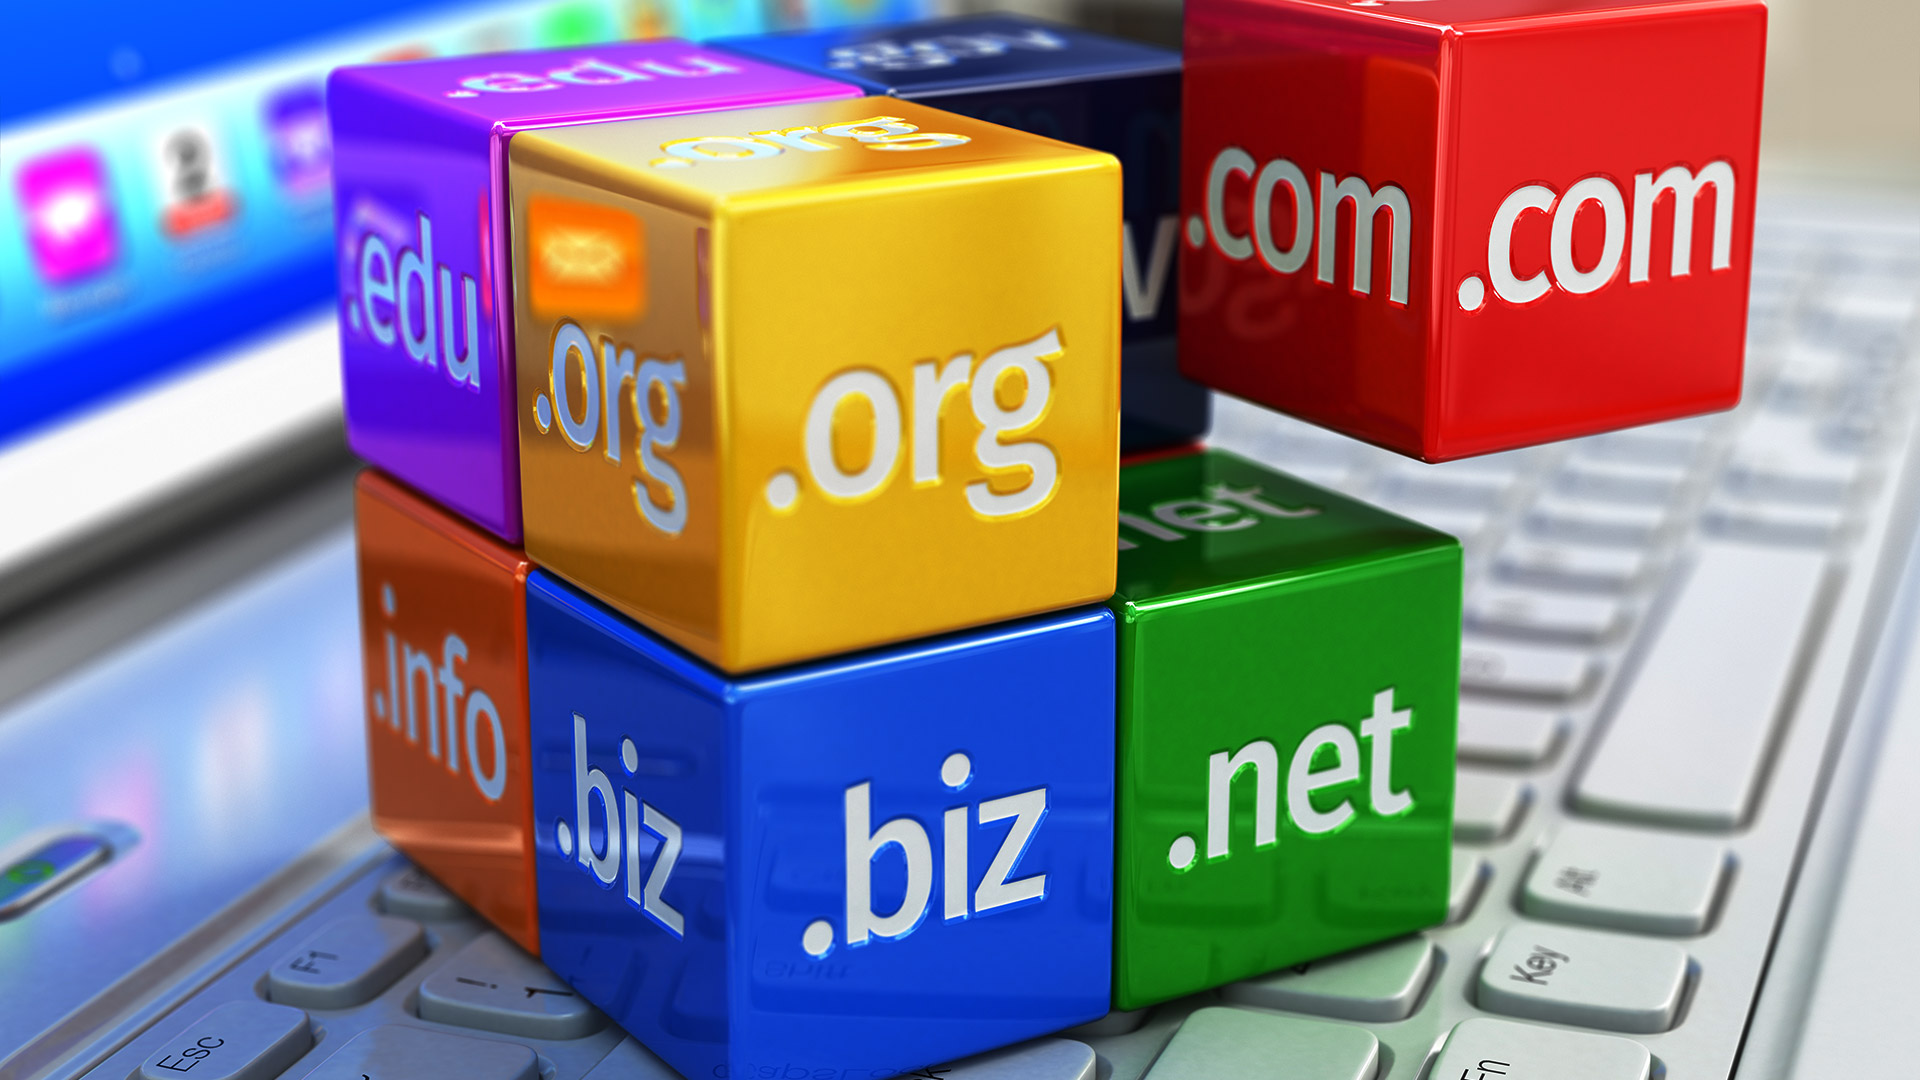 Cách chọn tên miền cho website hiệu quả khi kinh doanh, viết blog